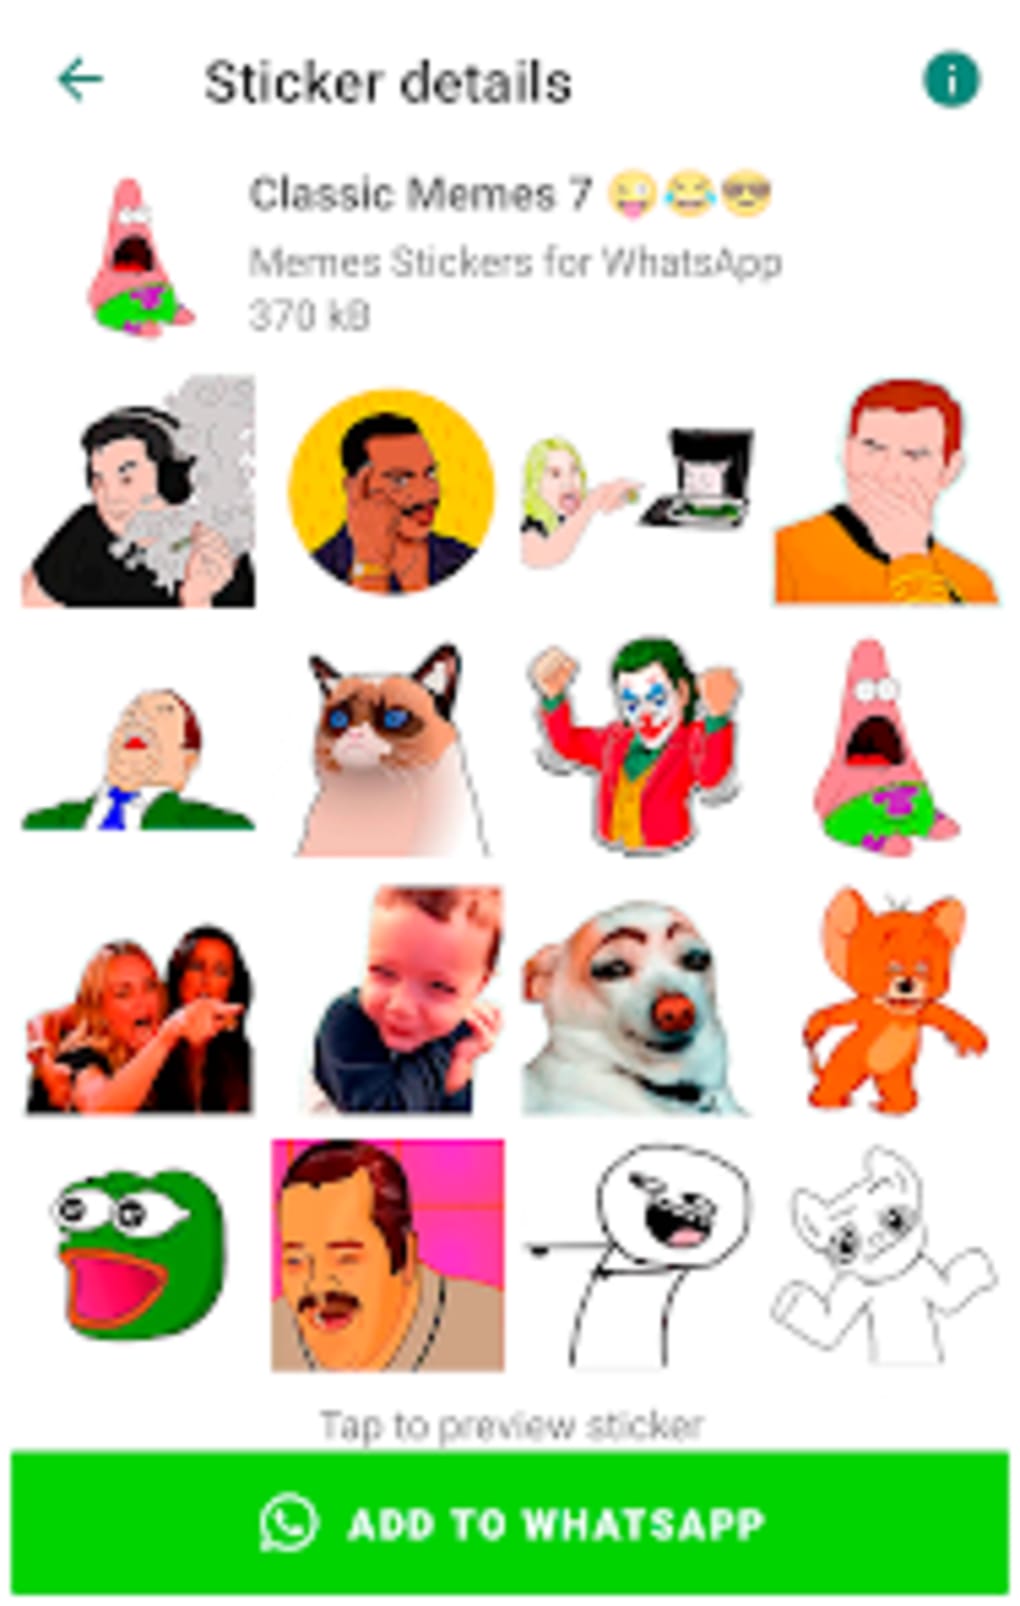 WASticker Figurinhas de memes – Apps no Google Play